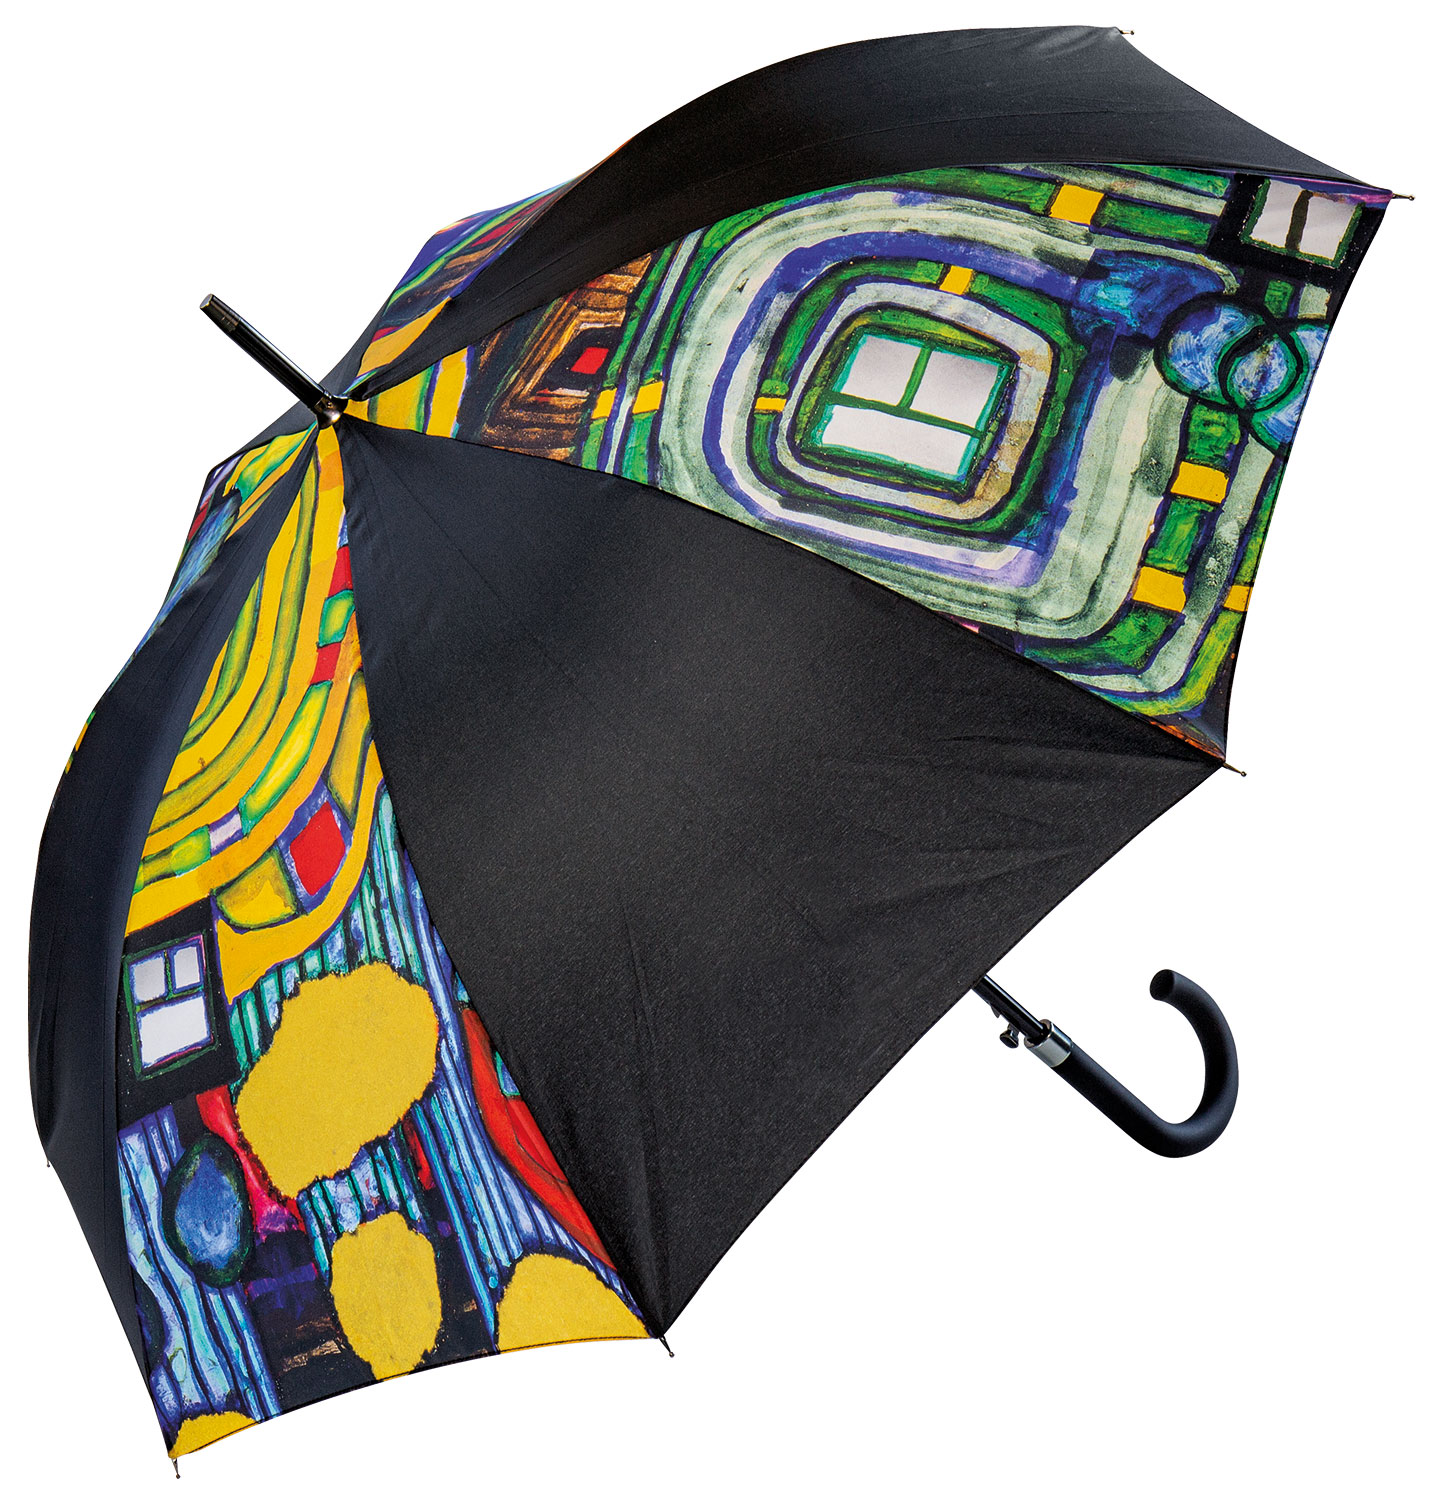 Stick umbrella "Raindrop Catcher" by Friedensreich Hundertwasser